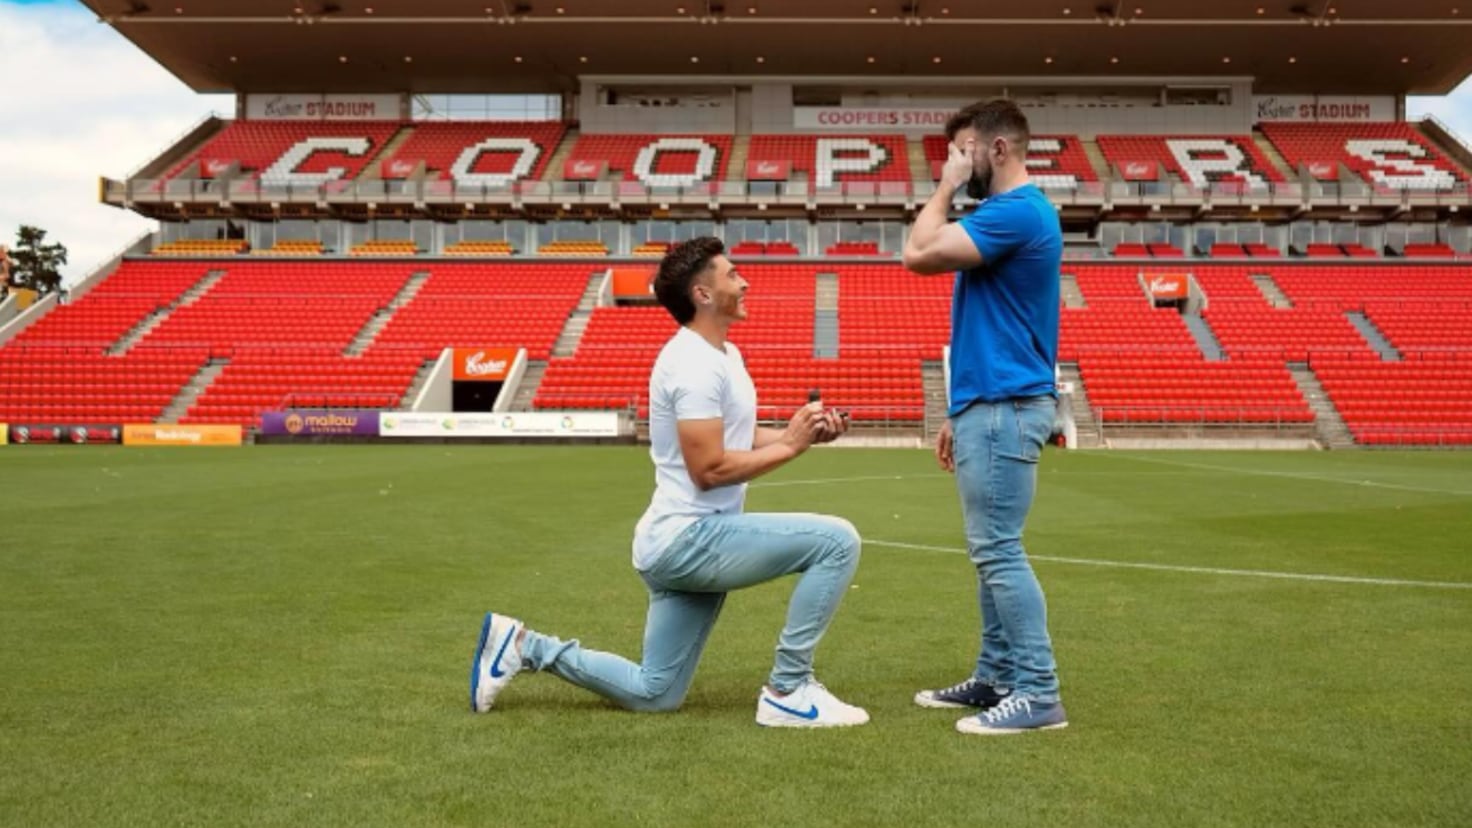 Josh Cavallo proposes to his partner at his team's stadium
